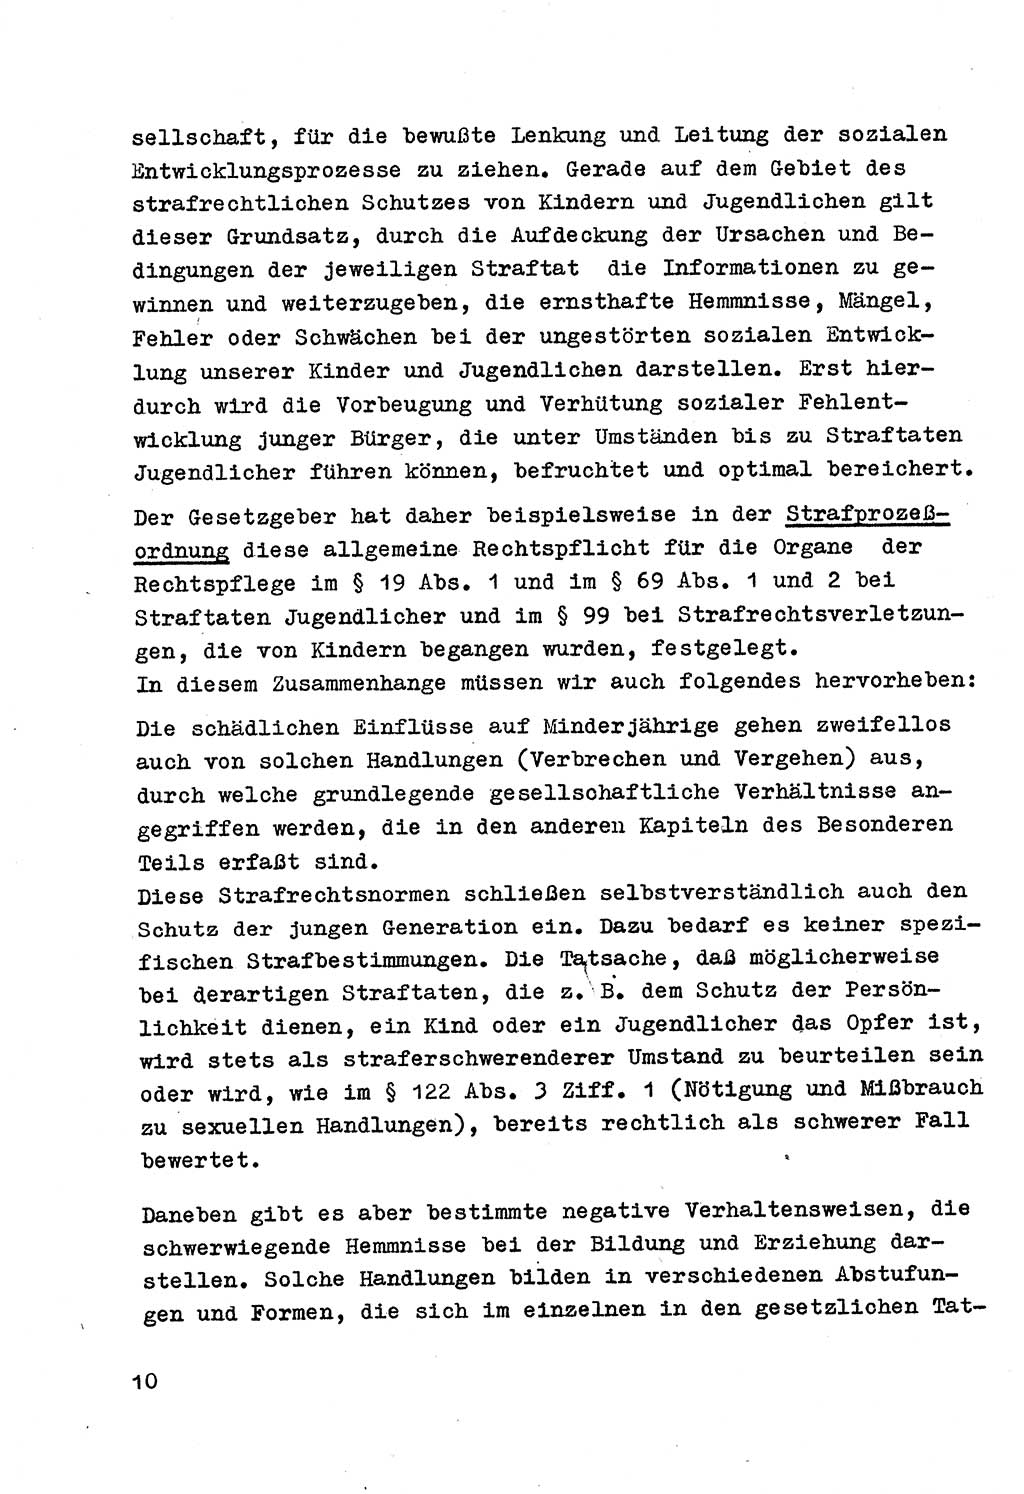 Strafrecht der DDR (Deutsche Demokratische Republik), Besonderer Teil, Lehrmaterial, Heft 4 1969, Seite 10 (Strafr. DDR BT Lehrmat. H. 4 1969, S. 10)